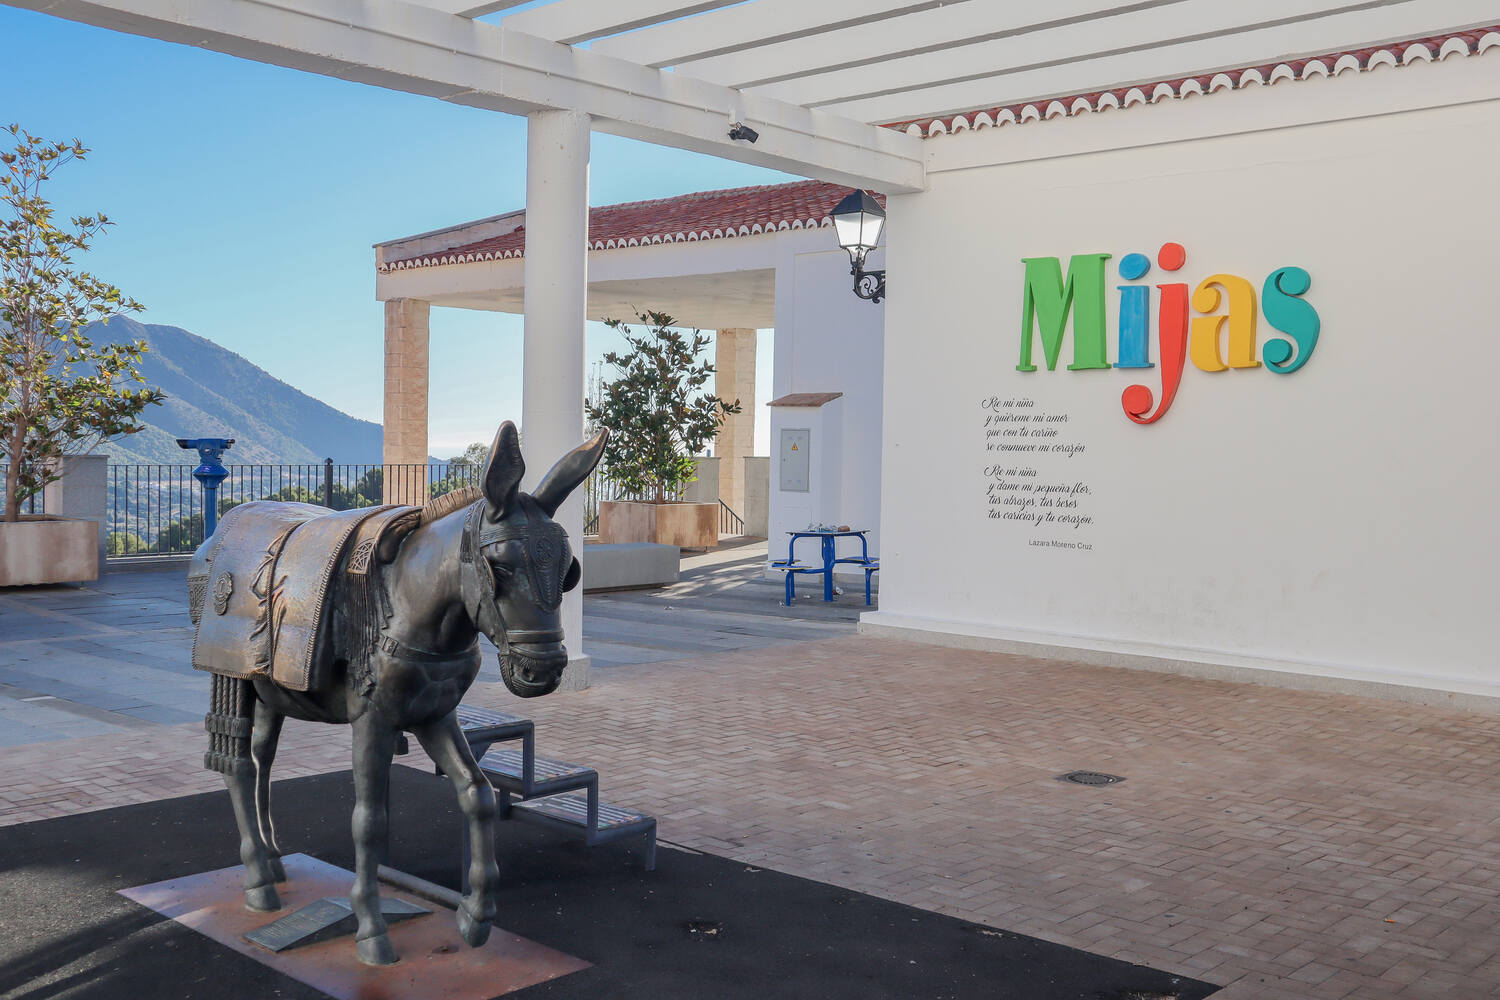 Donkey-Statue-in-Mijas-Spain